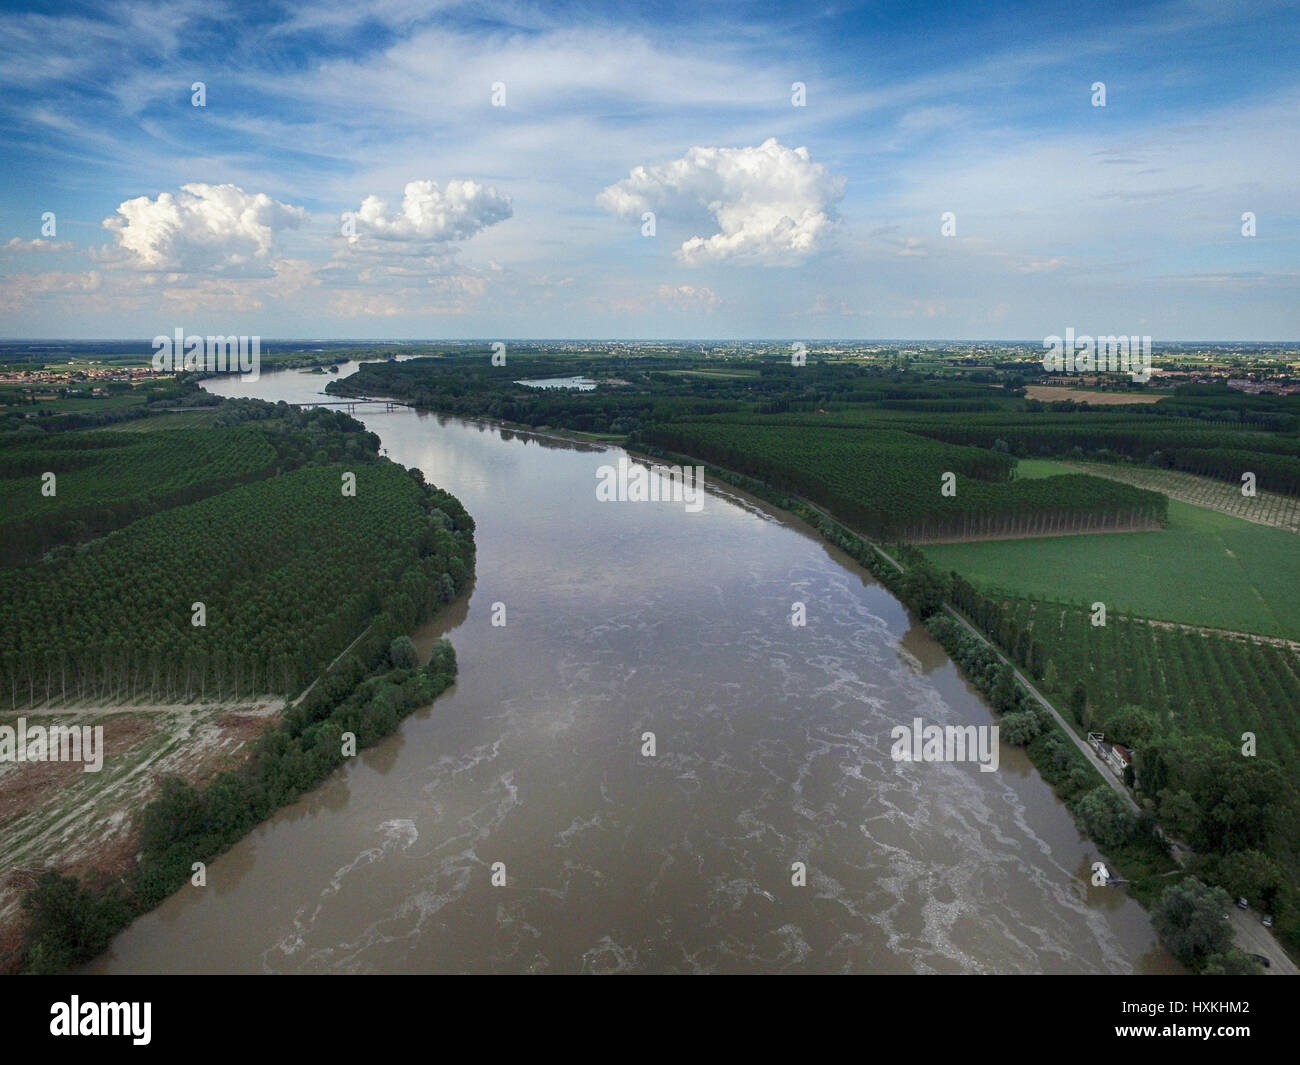 Aerial view of Po River, Padana Plain, Reggio Emiliaaerial view, Emilia Romagna Region, Italy Stock Photo